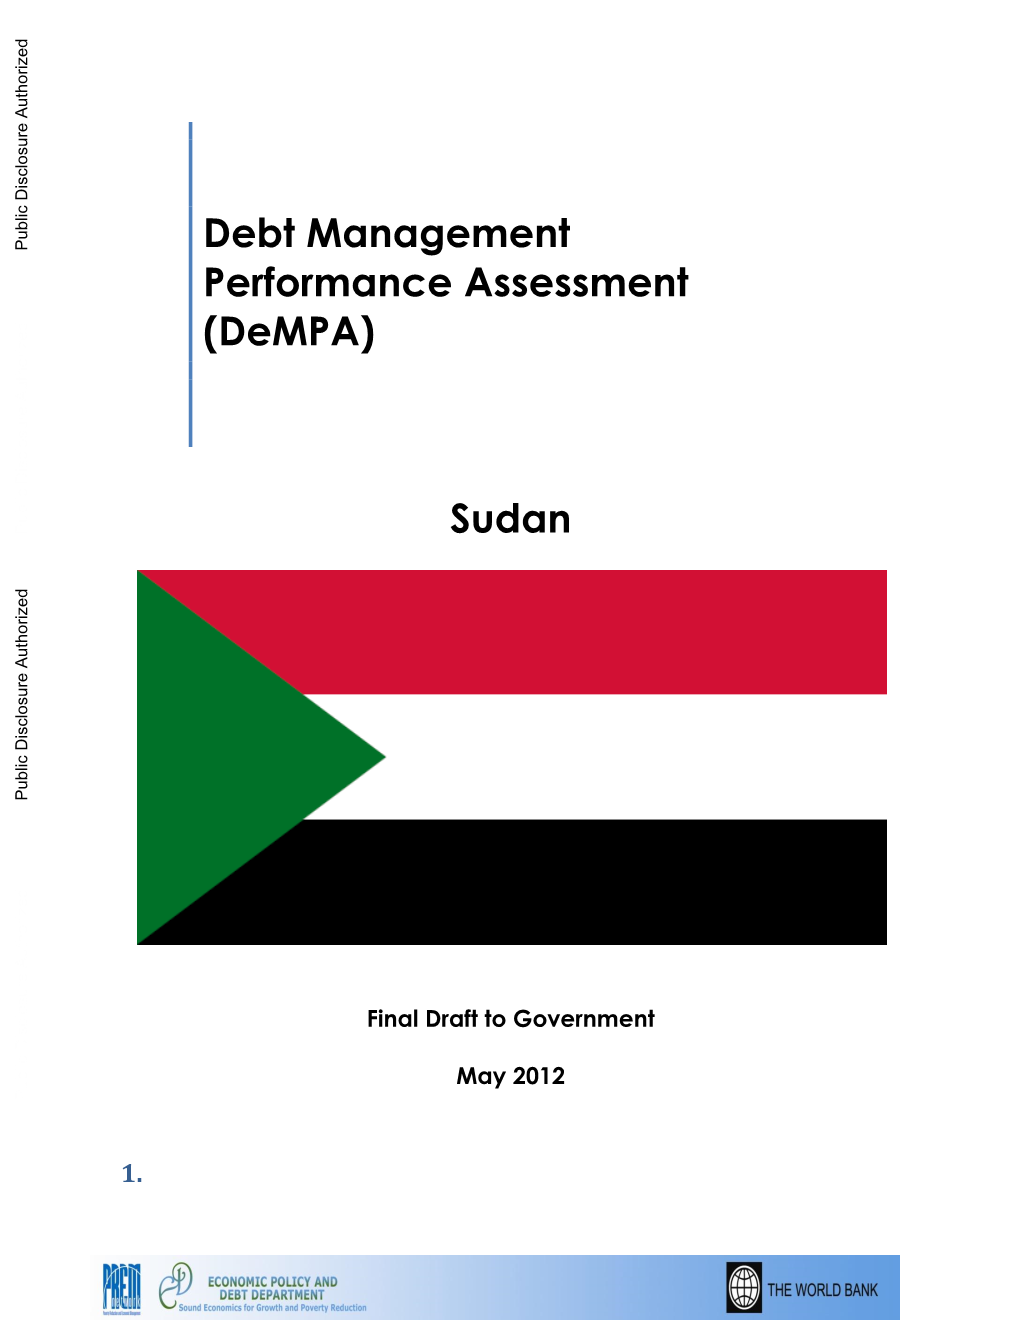 Debt Management Performance Assessment (Dempa)